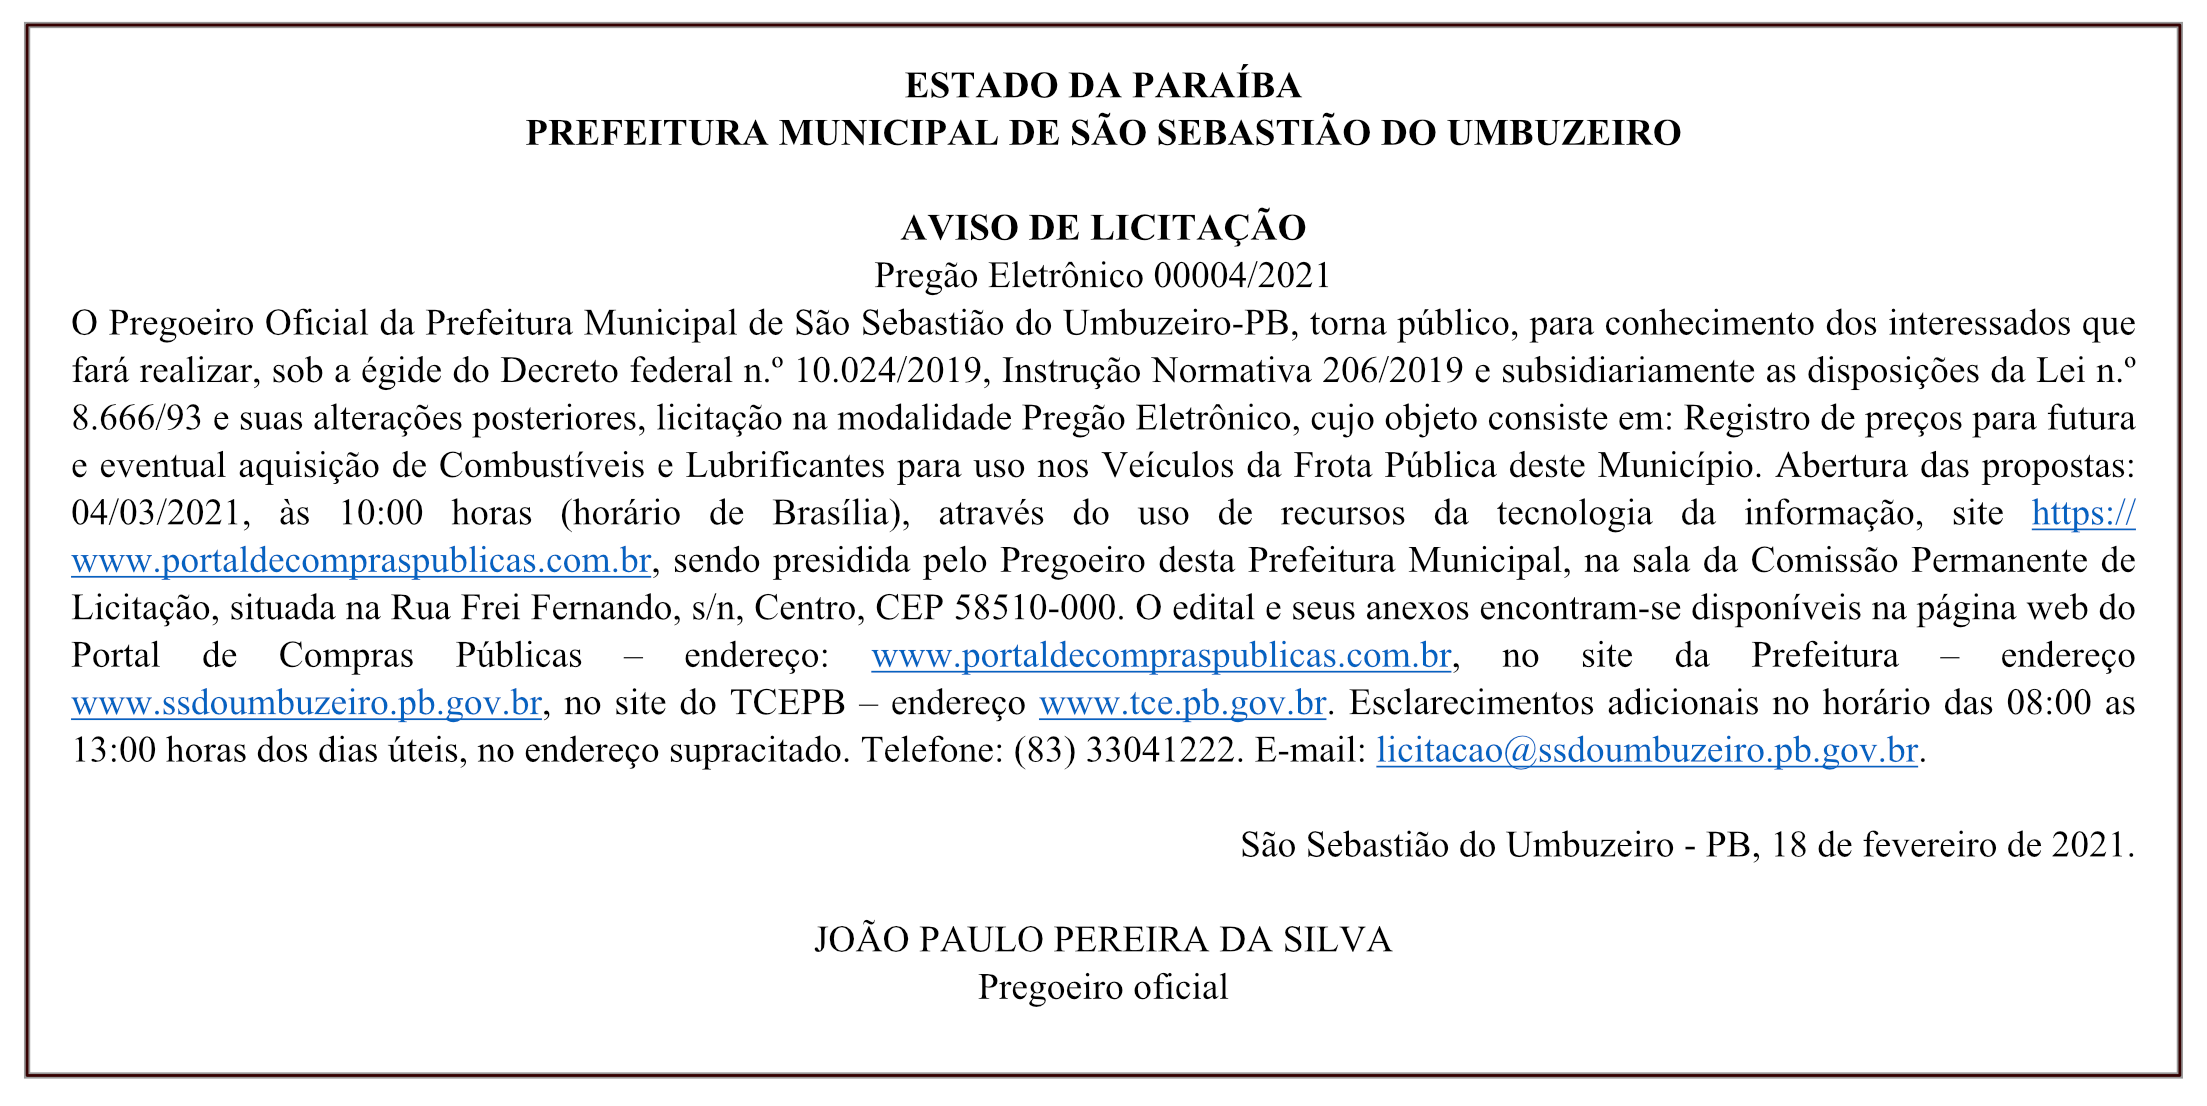 PREFEITURA MUNICIPAL DE SÃO SEBASTIÃO DO UMBUZEIRO – AVISO DE LICITAÇÃO – Pregão Eletrônico 00004/2021